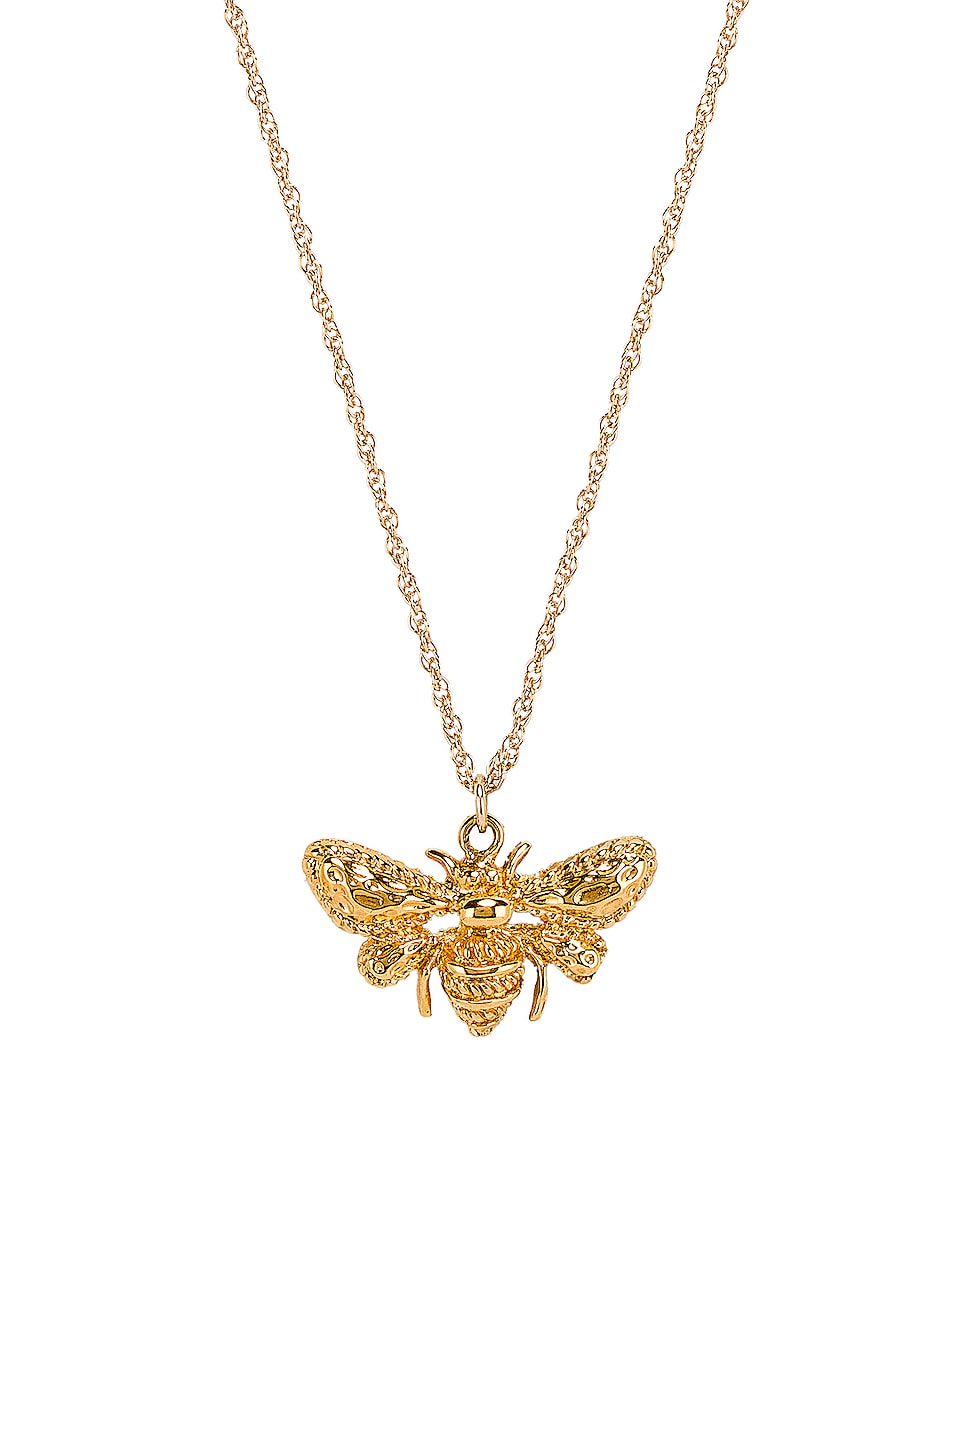 Natalie B Jewelry Queen Bee Necklace in 